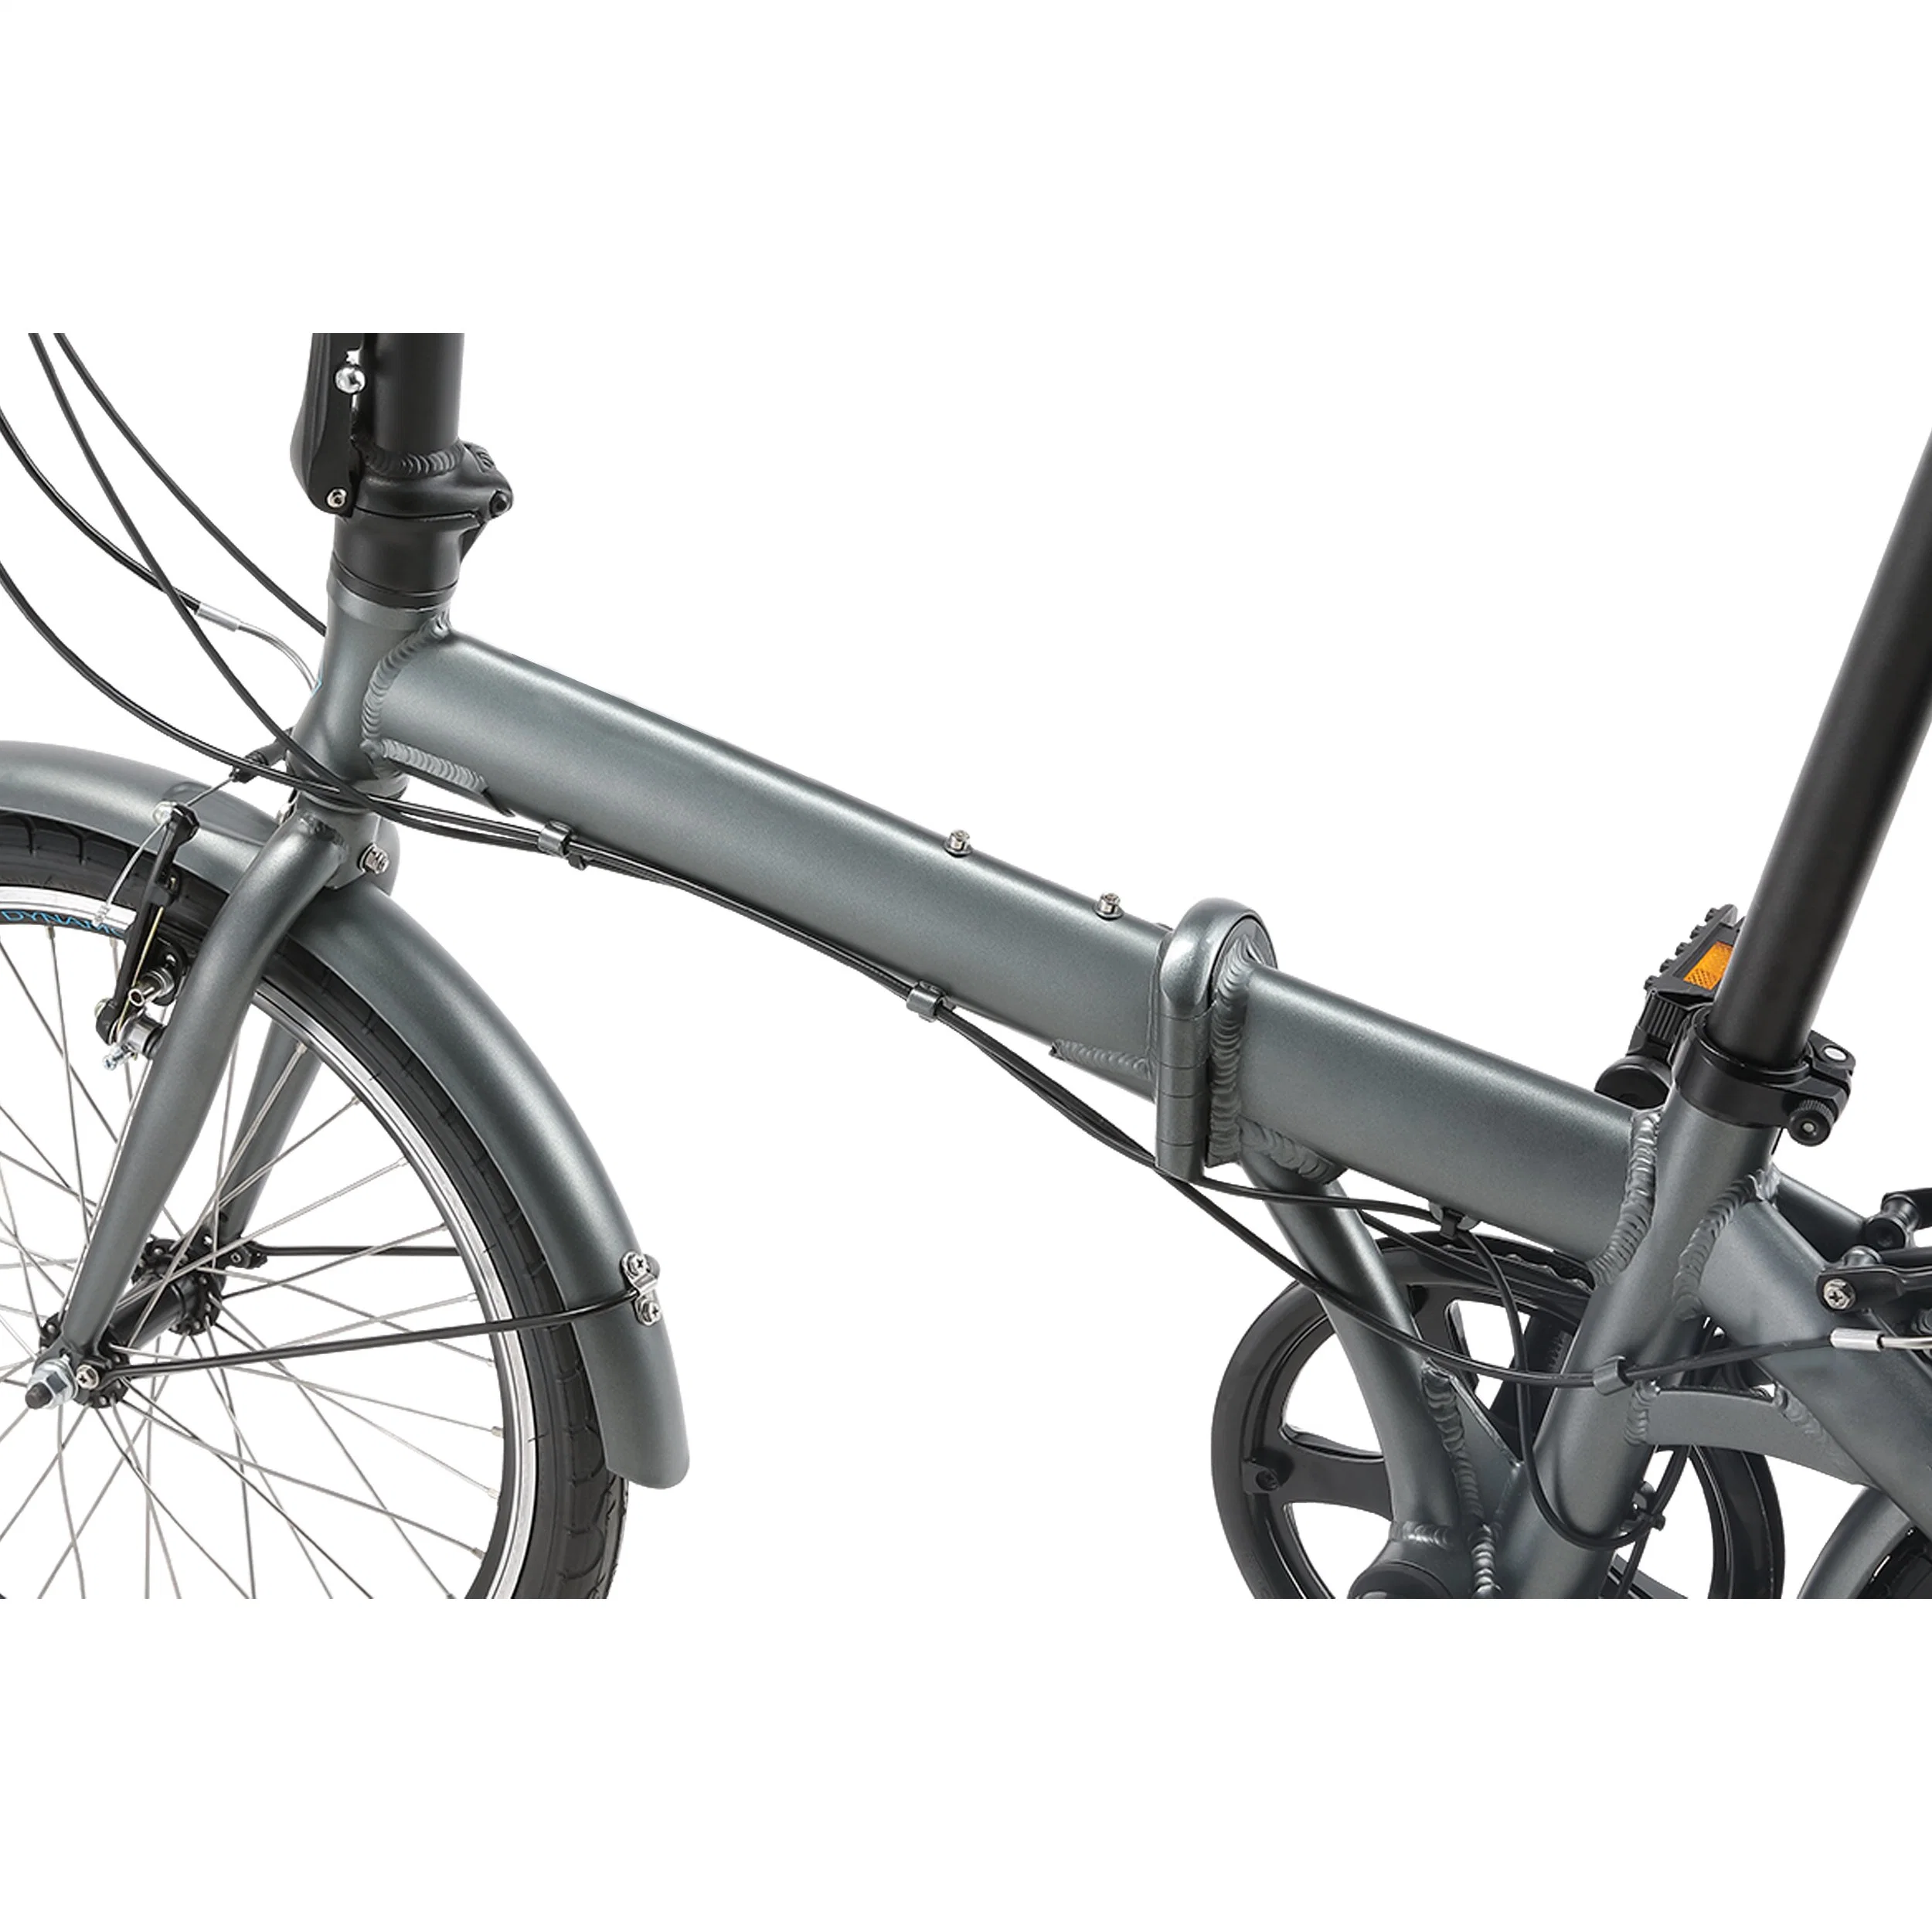 Высококачественный и приемлемый по цене складной электрический велосипед